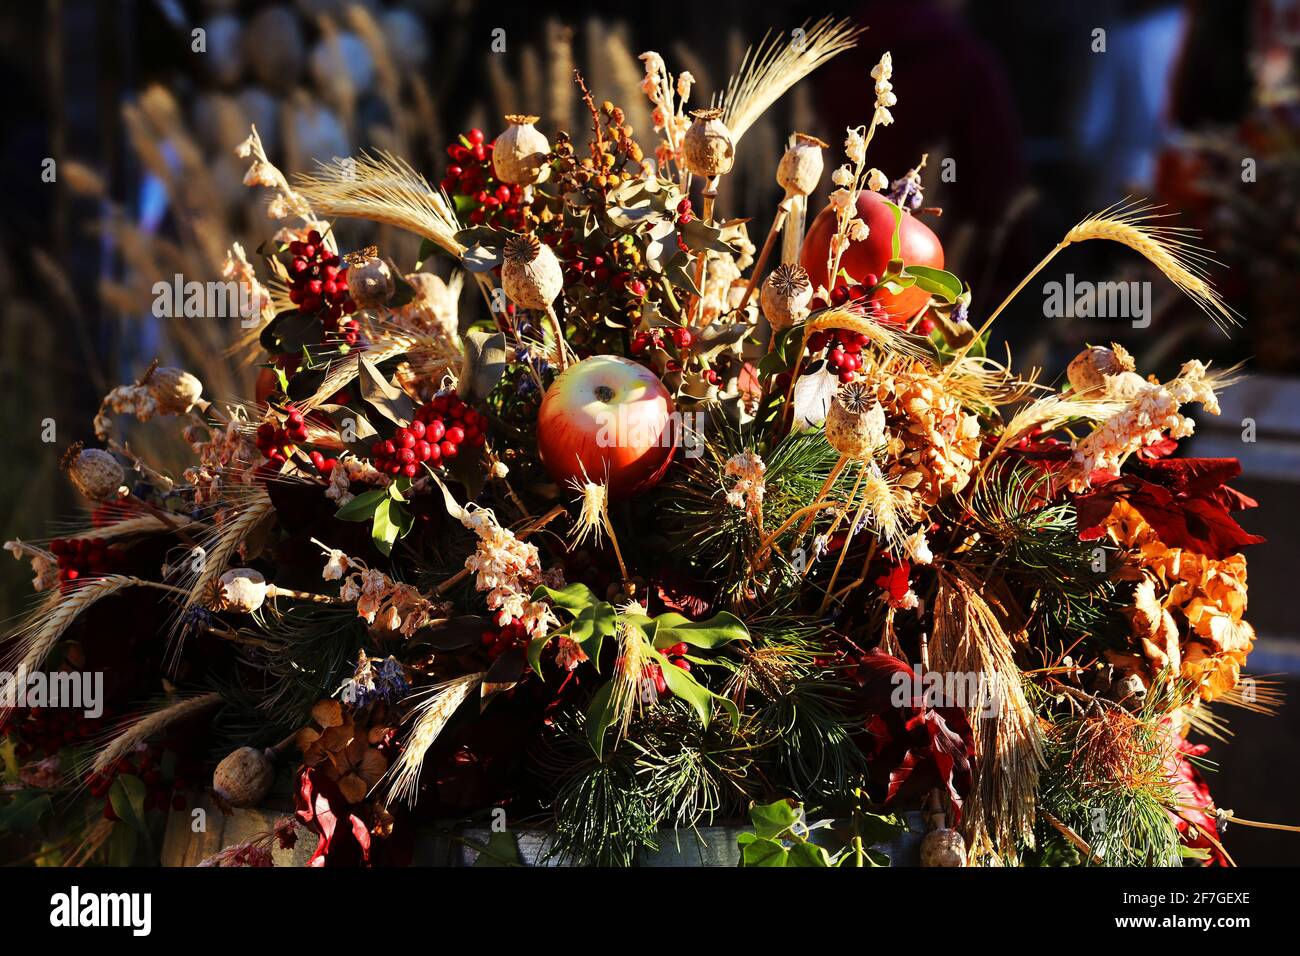 herbstliche Erntekrone aus Getreide, roten Äpfeln und Beeren auf dem Umzug zum brixener Brot- und Getreidemarkt in Südtirol, Dolomiten, Italien Stock Photo